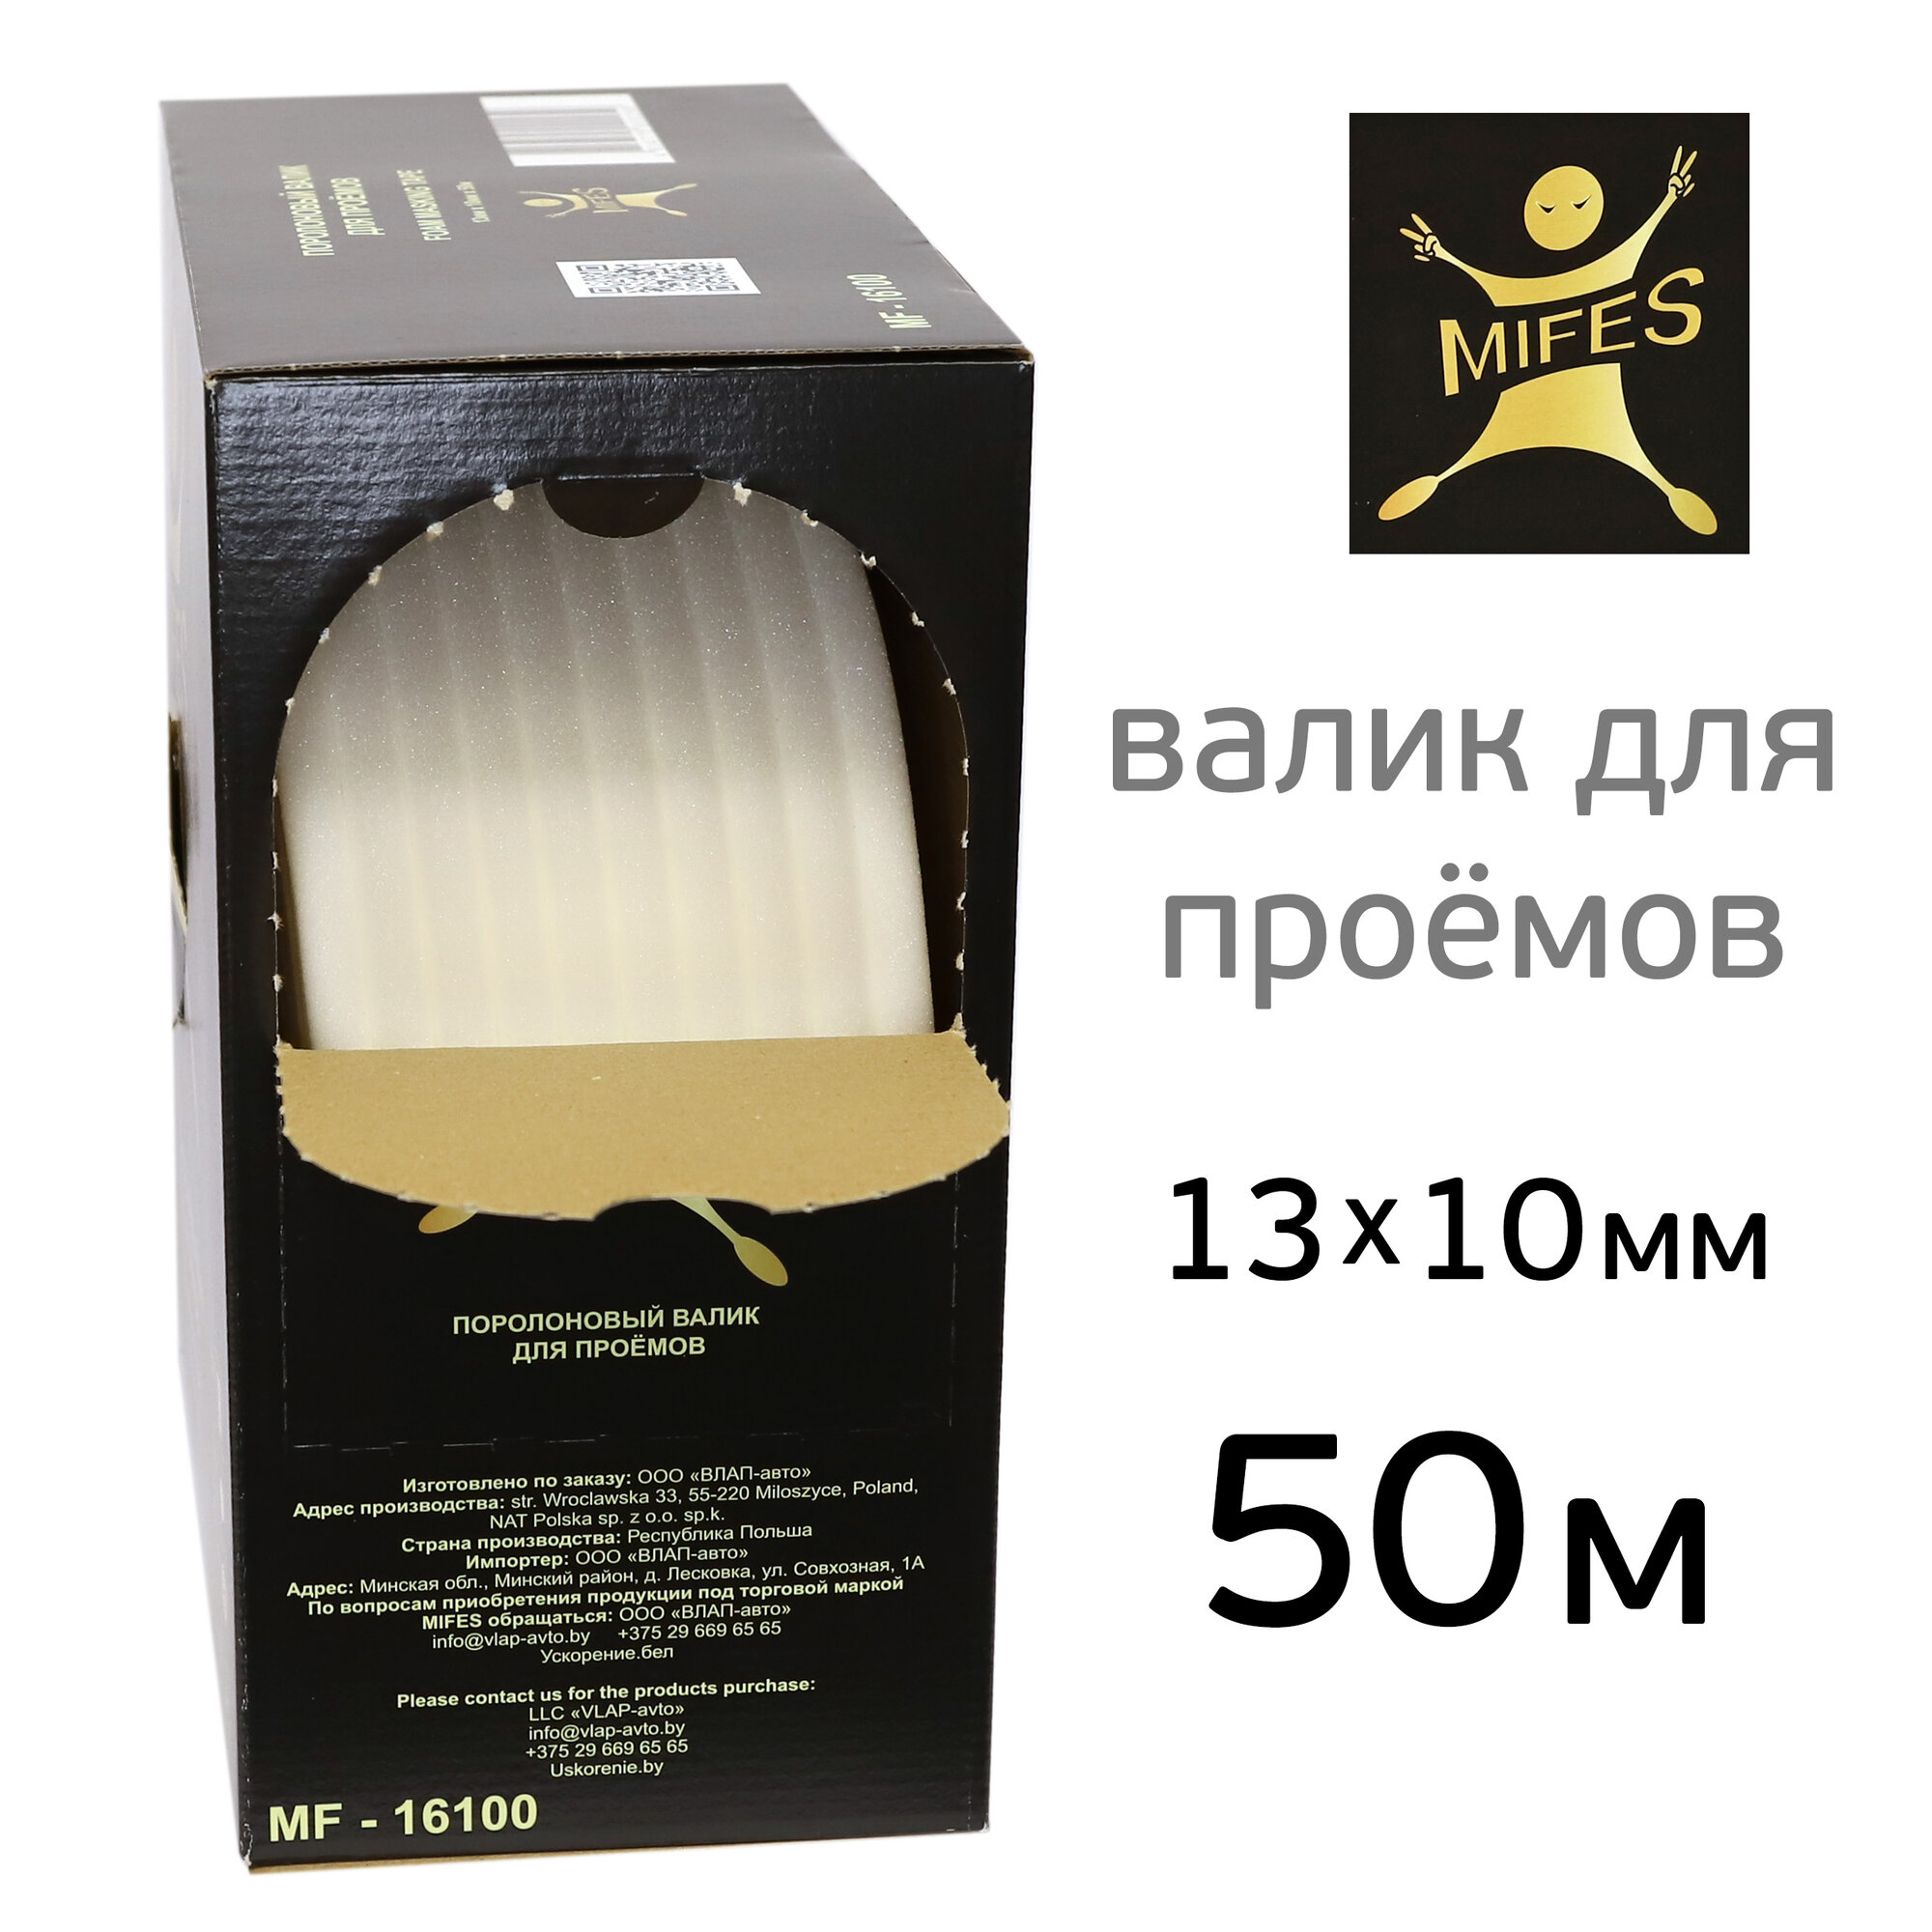 Валик поролоновый (50м) MIFES коробка маскировочный для проёмов (ф13мм)